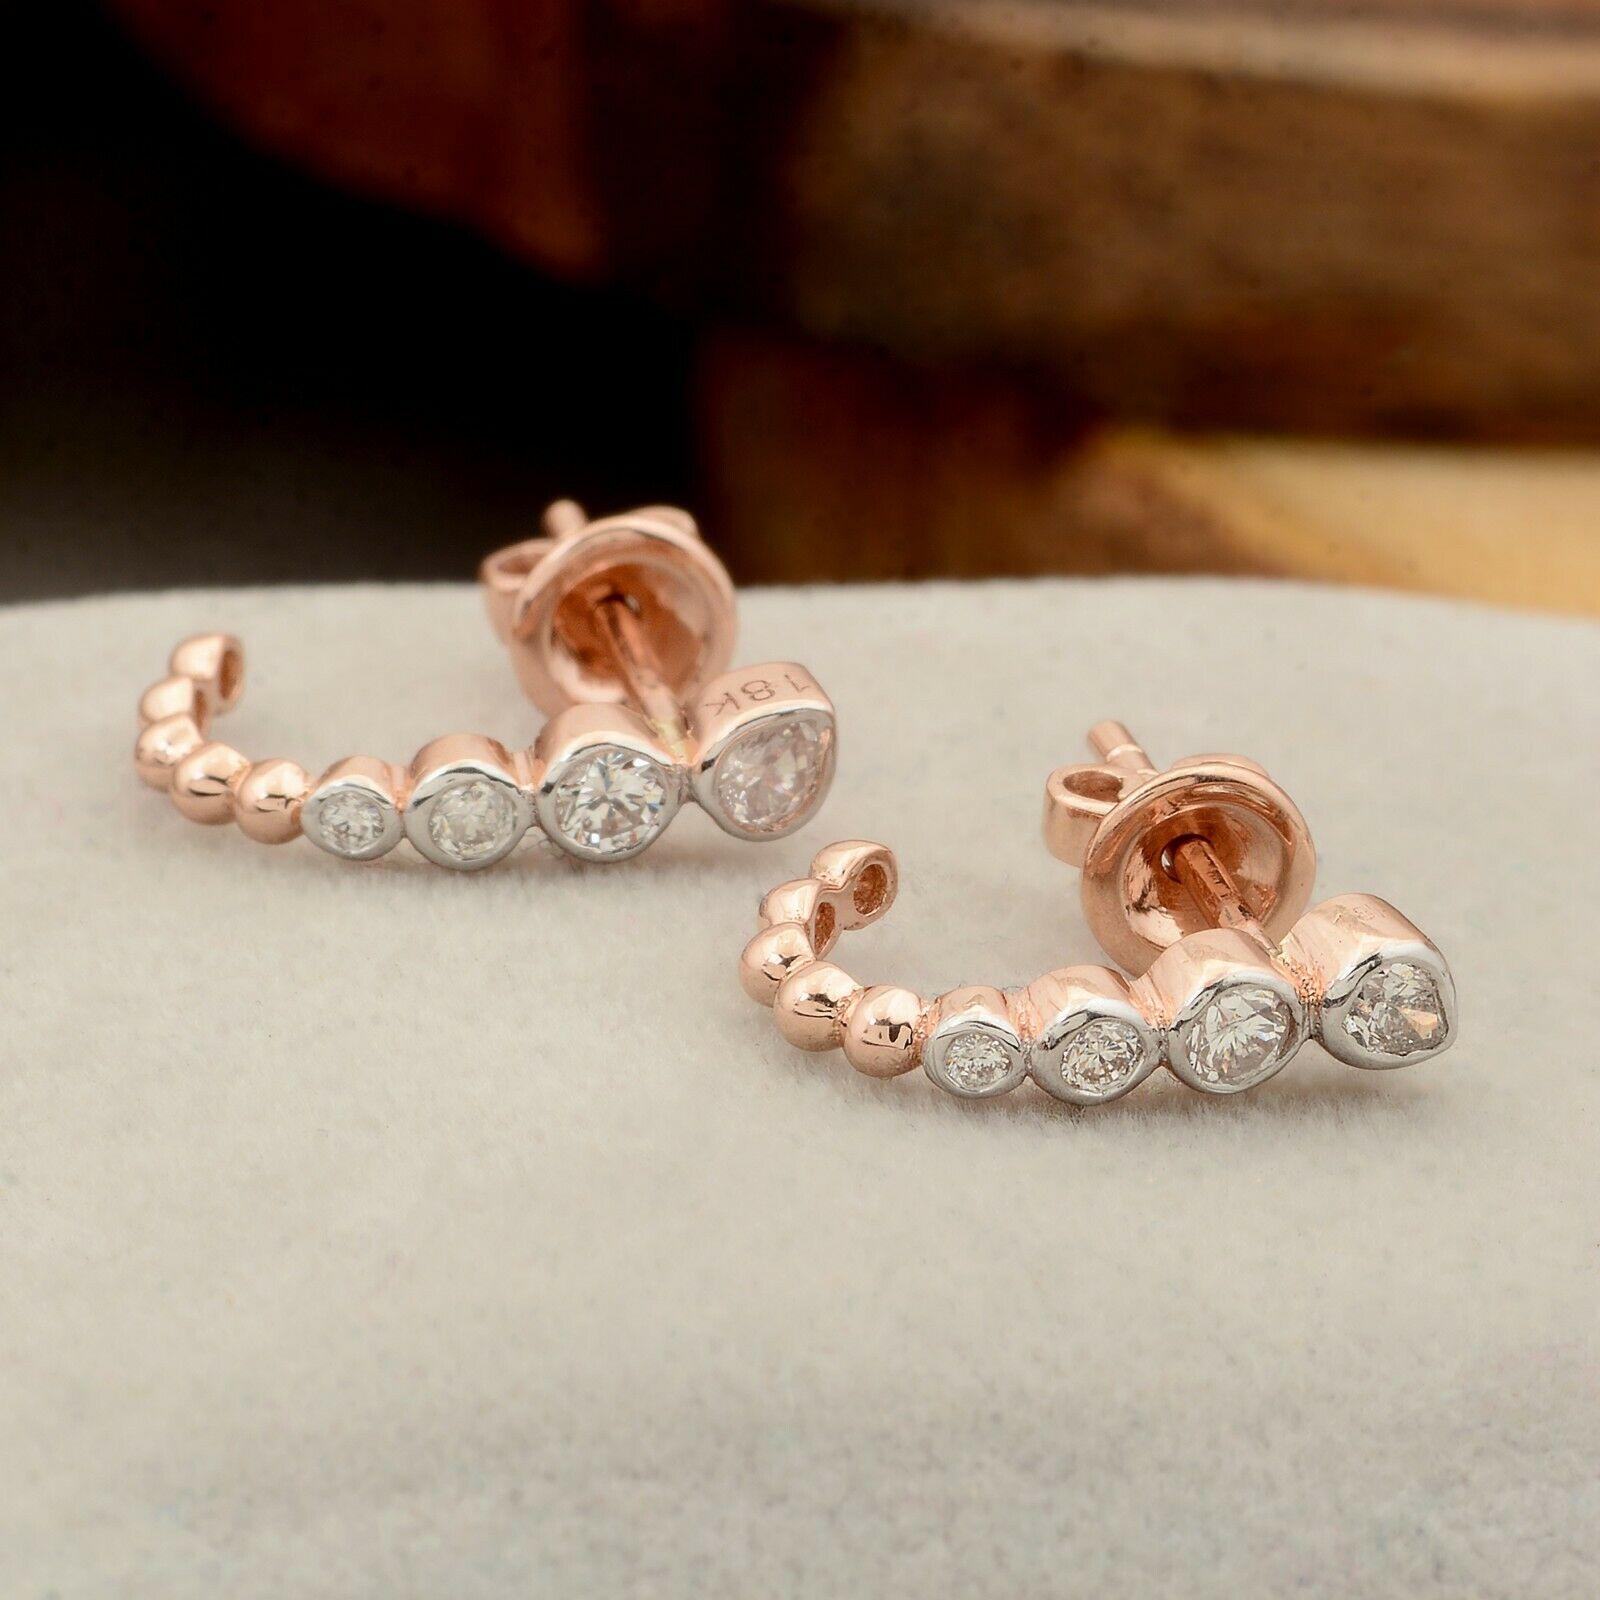 Fabriquées à la main en or 18 carats, ces magnifiques boucles d'oreilles sont serties de 0,39 carats d'or étincelant  diamants.  Disponible en or rose, jaune et blanc.

SUIVRE  La vitrine de MEGHNA JEWELS pour découvrir la dernière collection et les